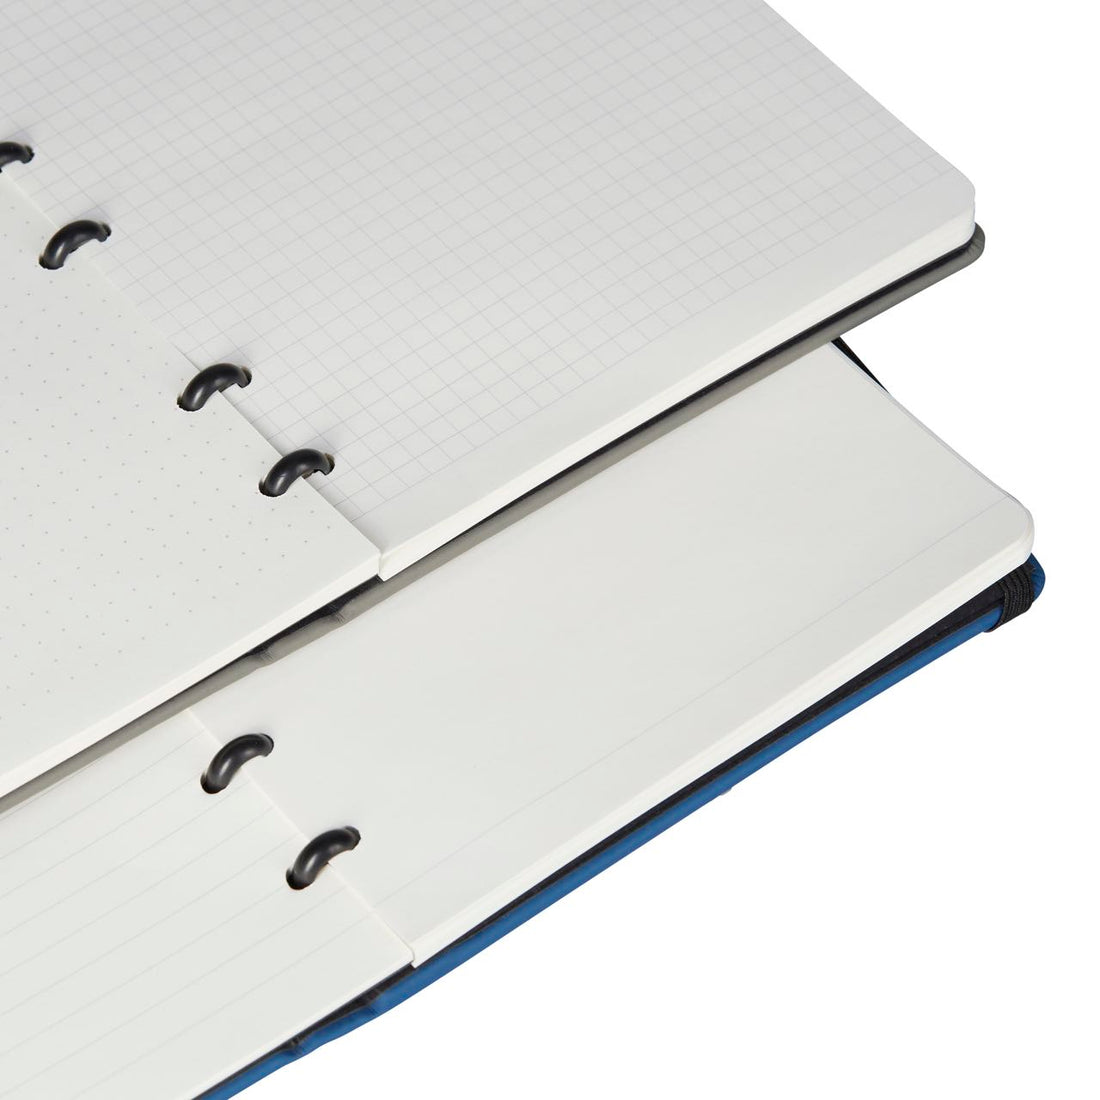 Extra-large refillable notebook - Minbøk